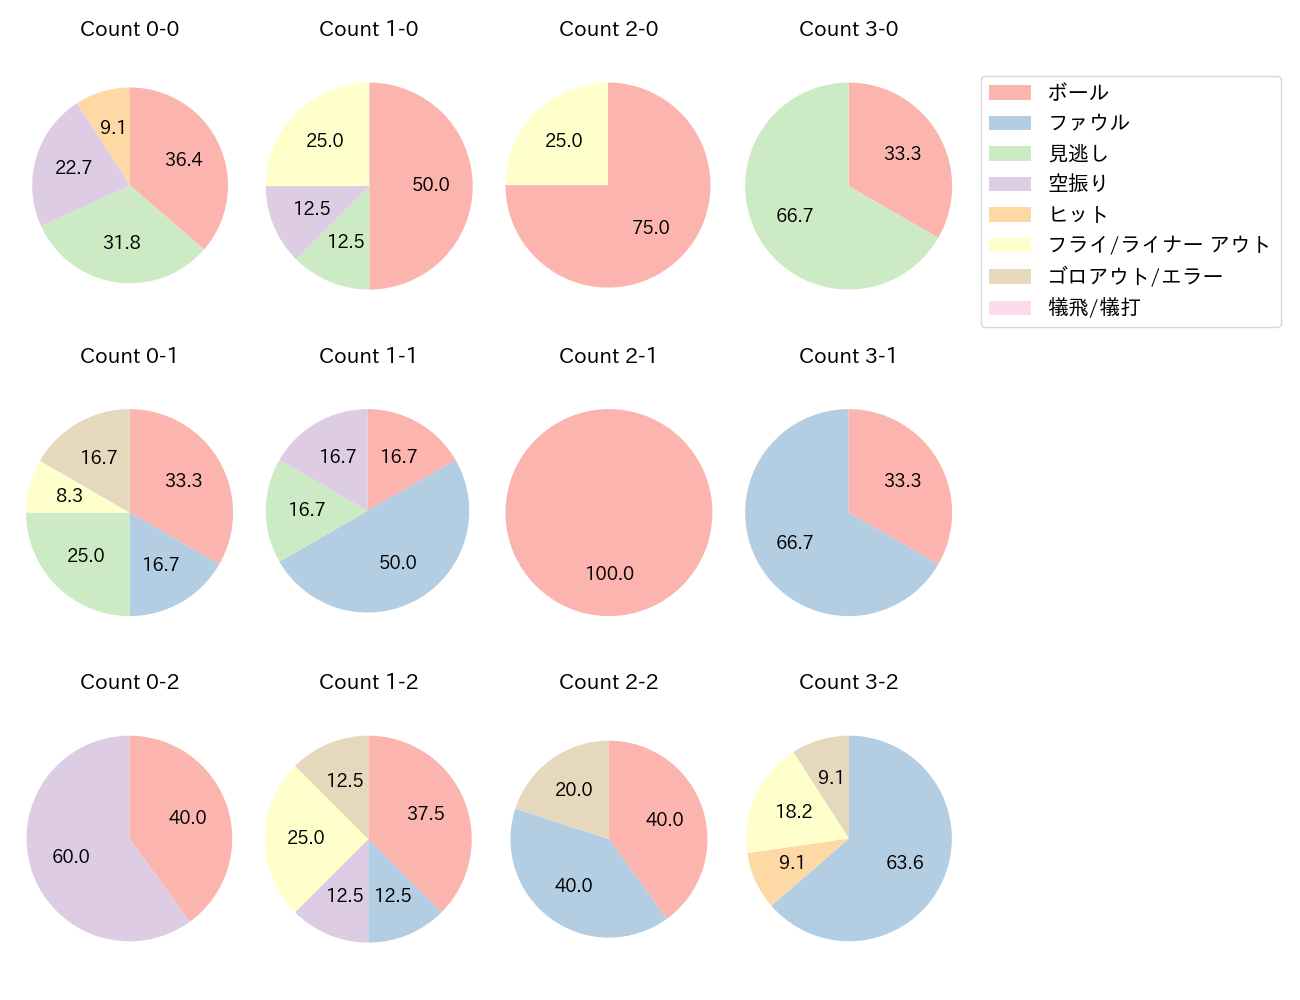 小野寺 暖の球数分布(2022年オープン戦)